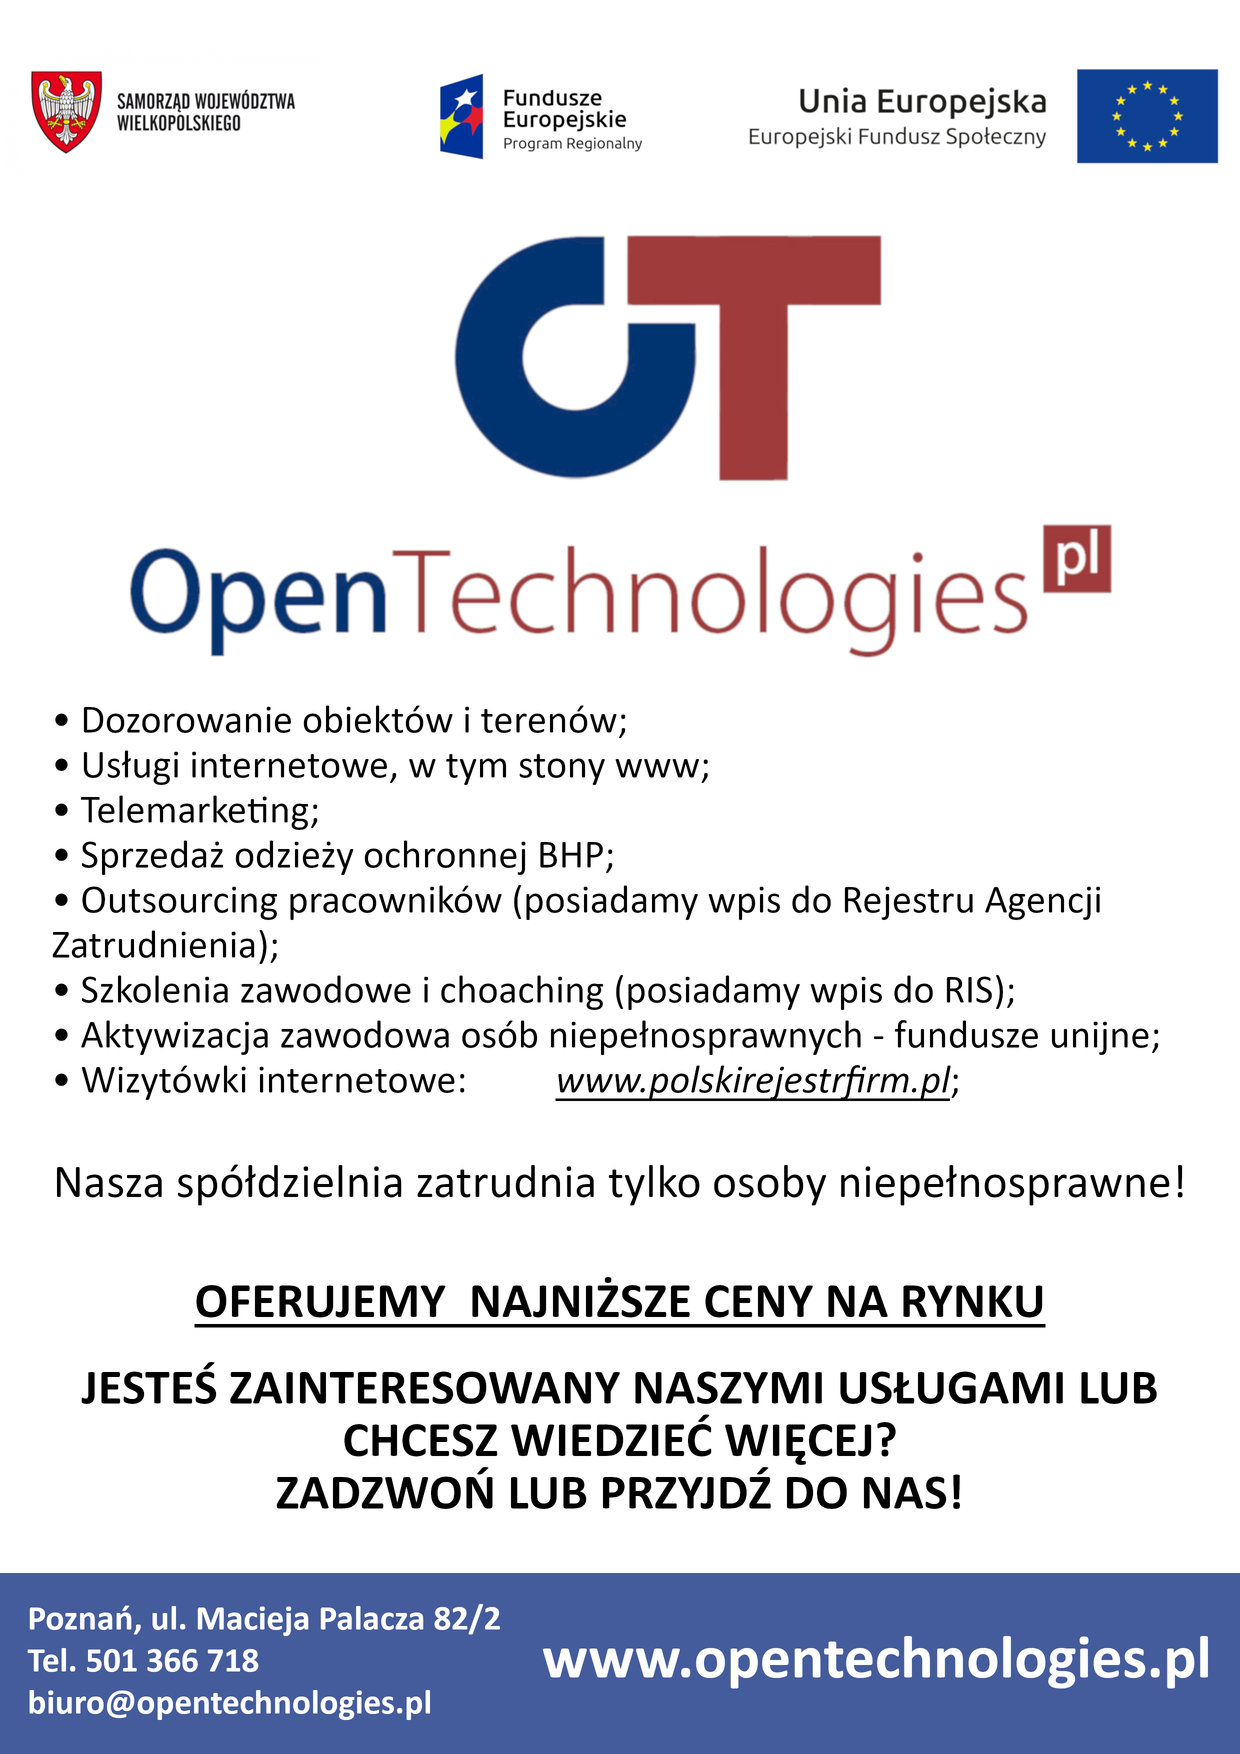 Ulotka informacyjna firmy Open Technologies